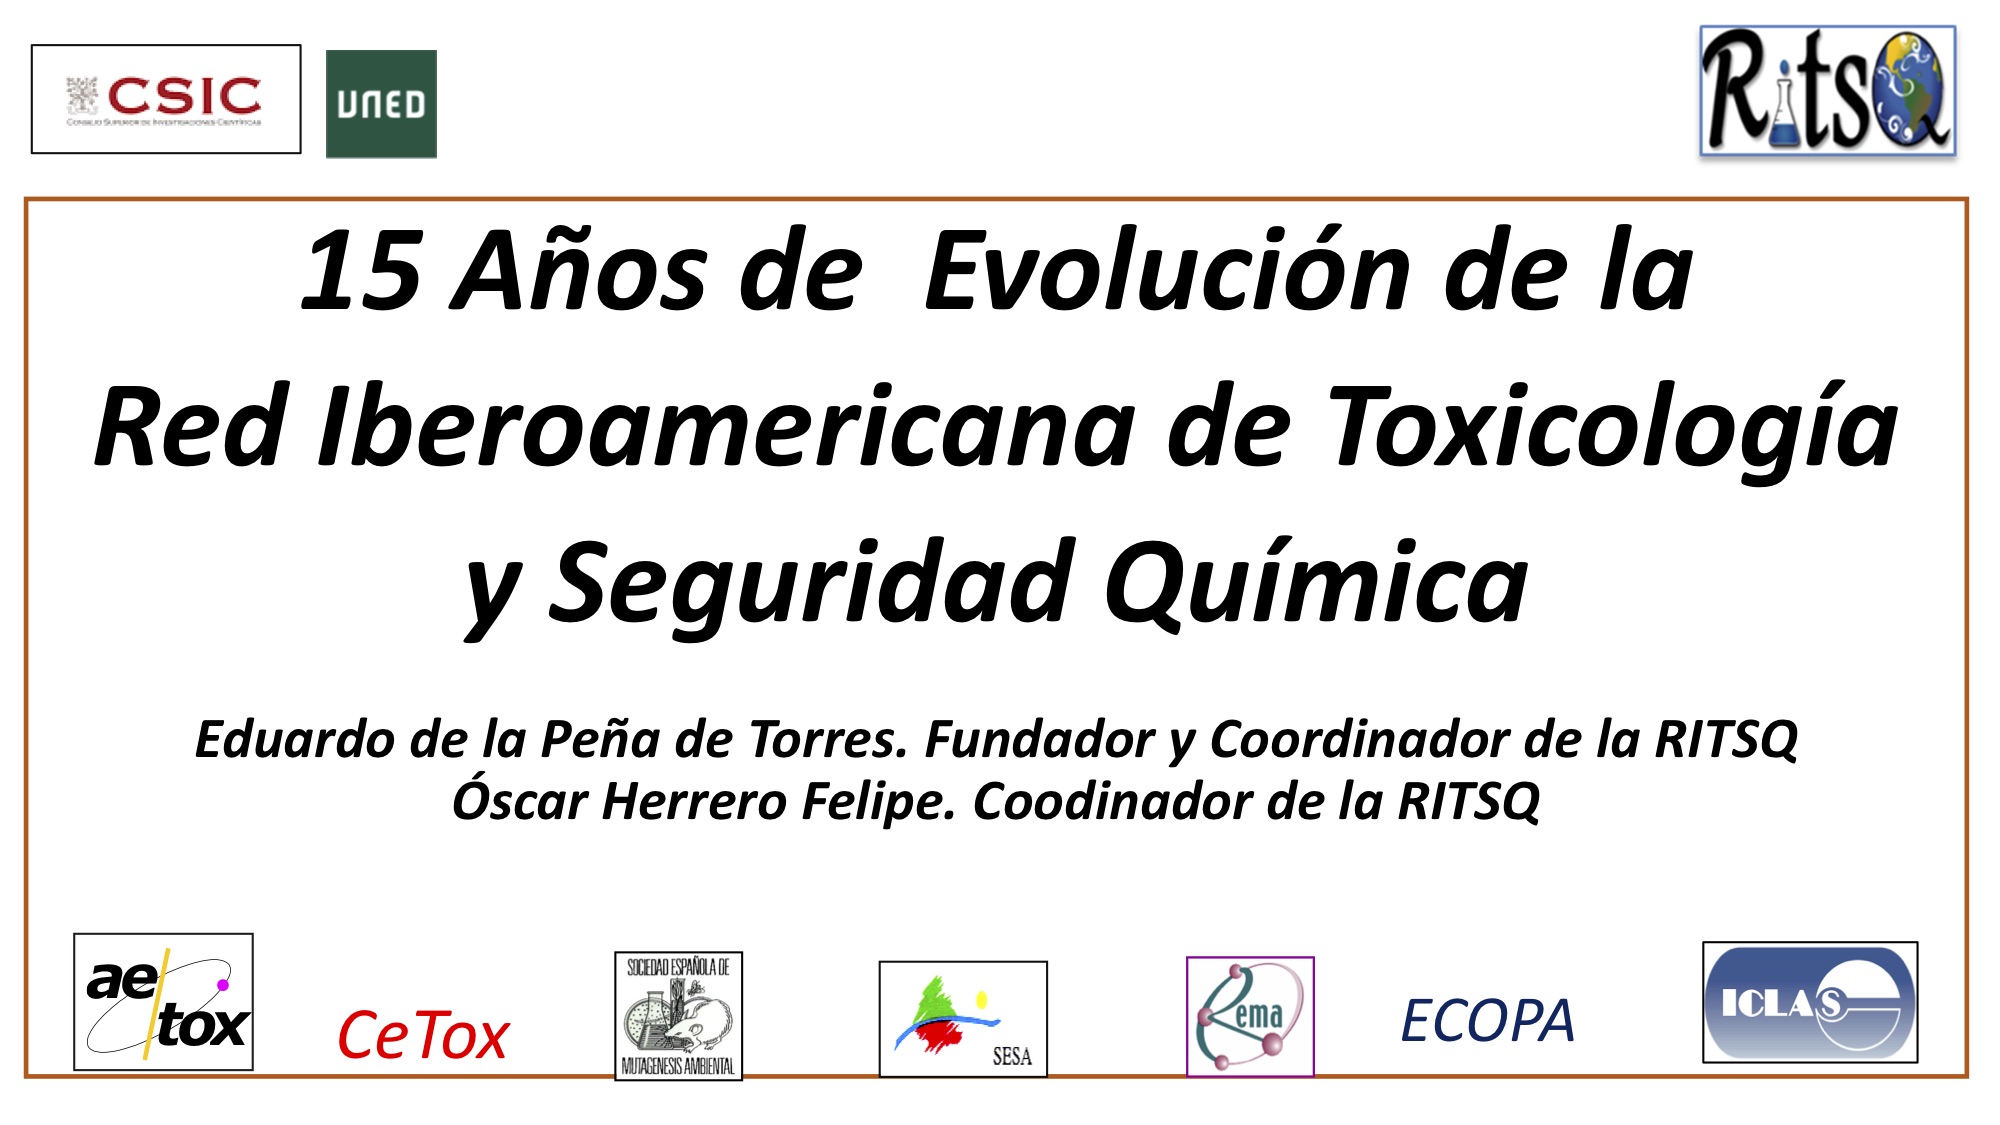 15 Años de Evolución de la Red Iberoamericana de Toxicología y Seguridad Química